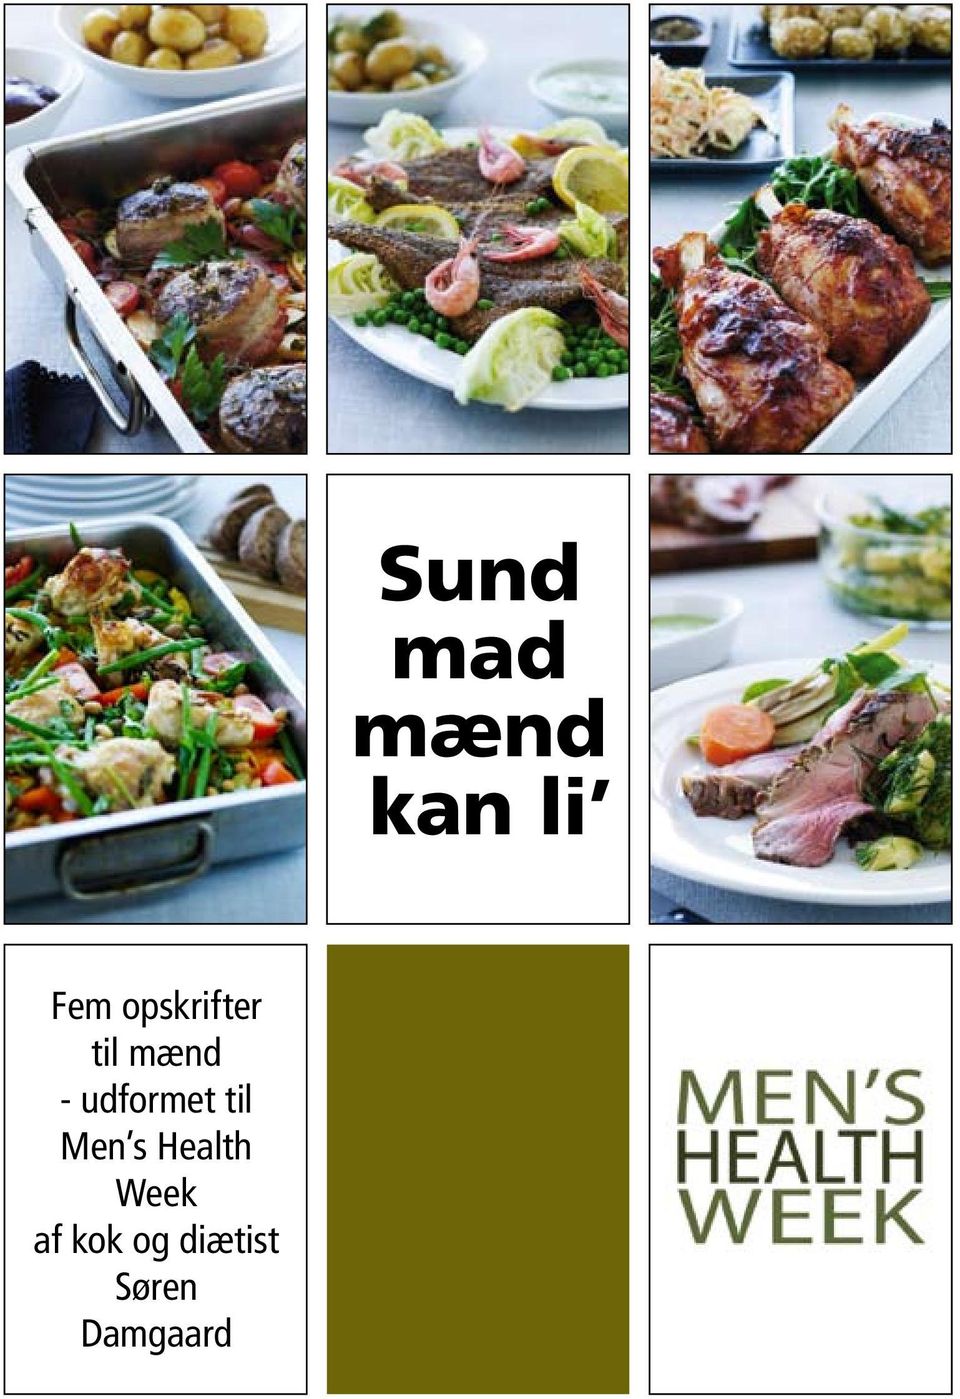 Fem opskrifter til mænd - udformet til Men s Health Week af kok og diætist  Søren Damgaard. Sund mad mænd kan li - PDF Gratis download